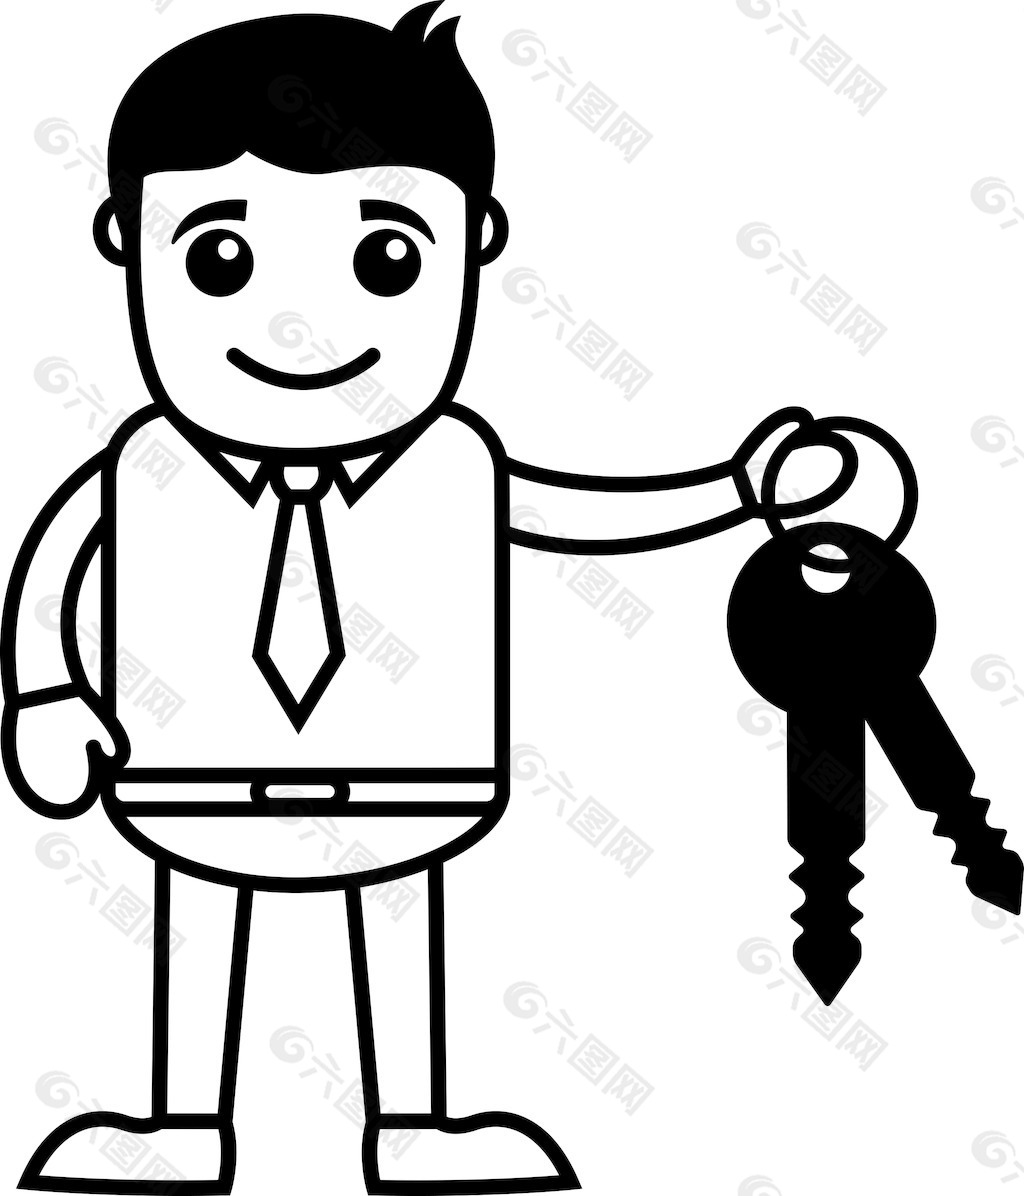 人与车钥匙-房地产贷款的概念-商业卡通人物矢量图